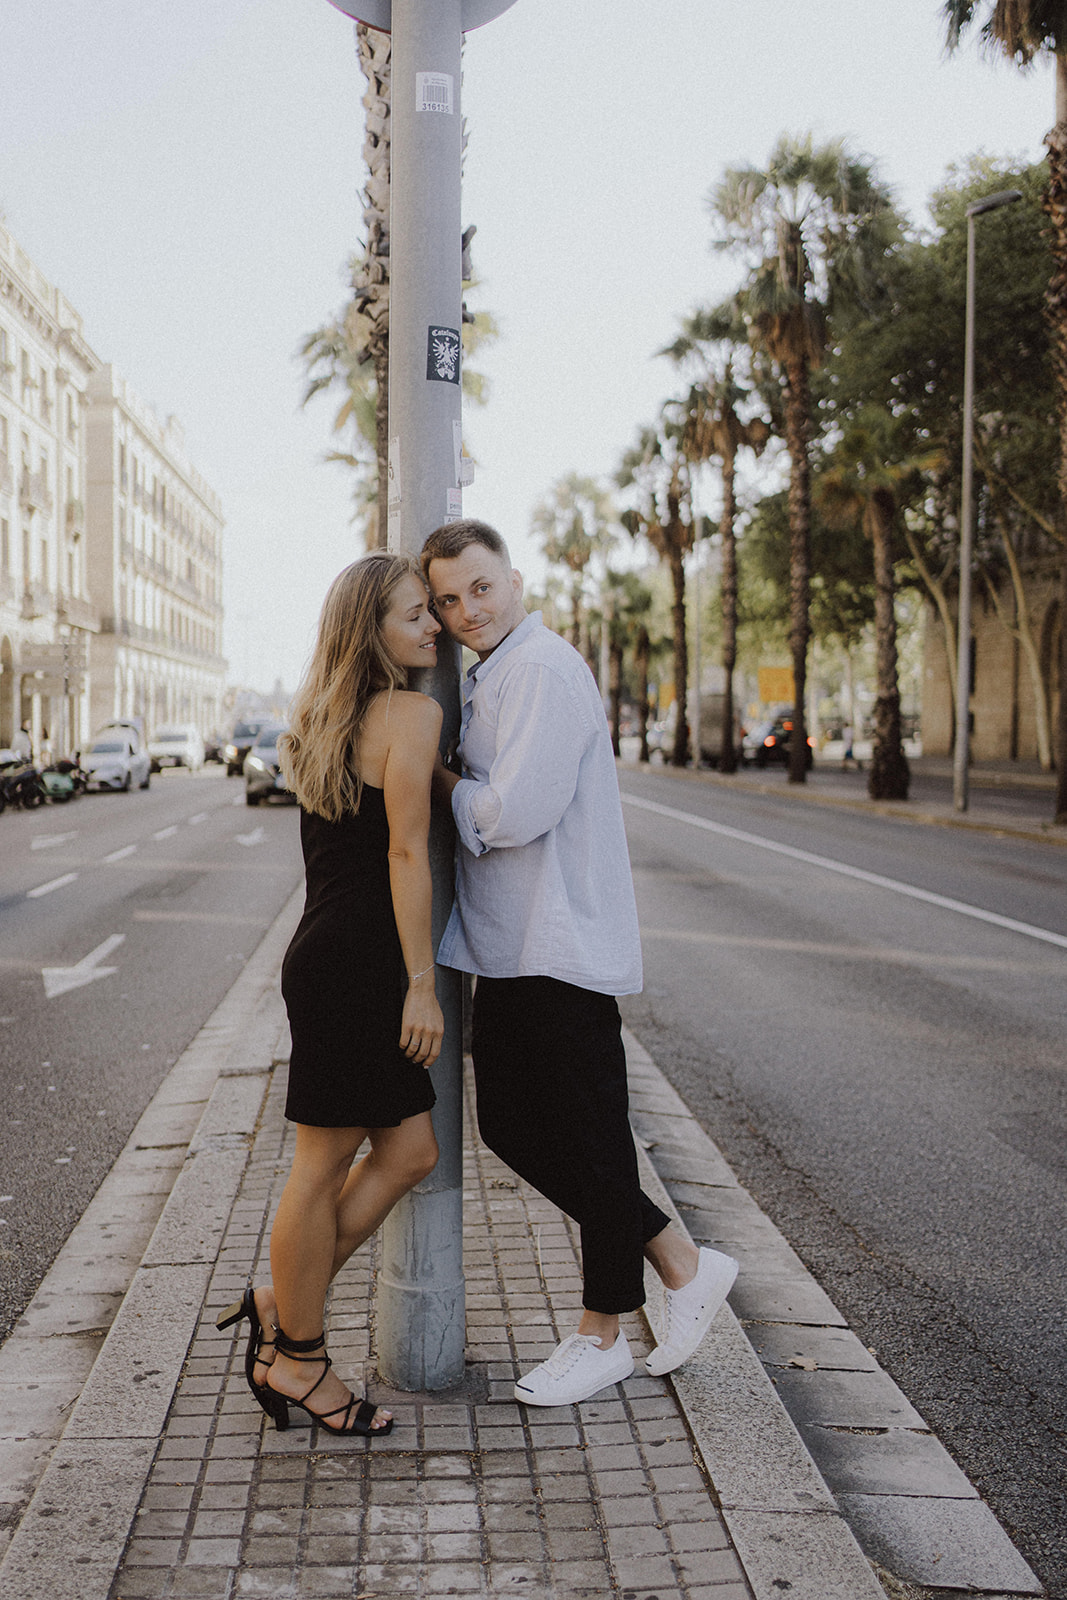 Lifestyle couple photoshoot in Barcelona